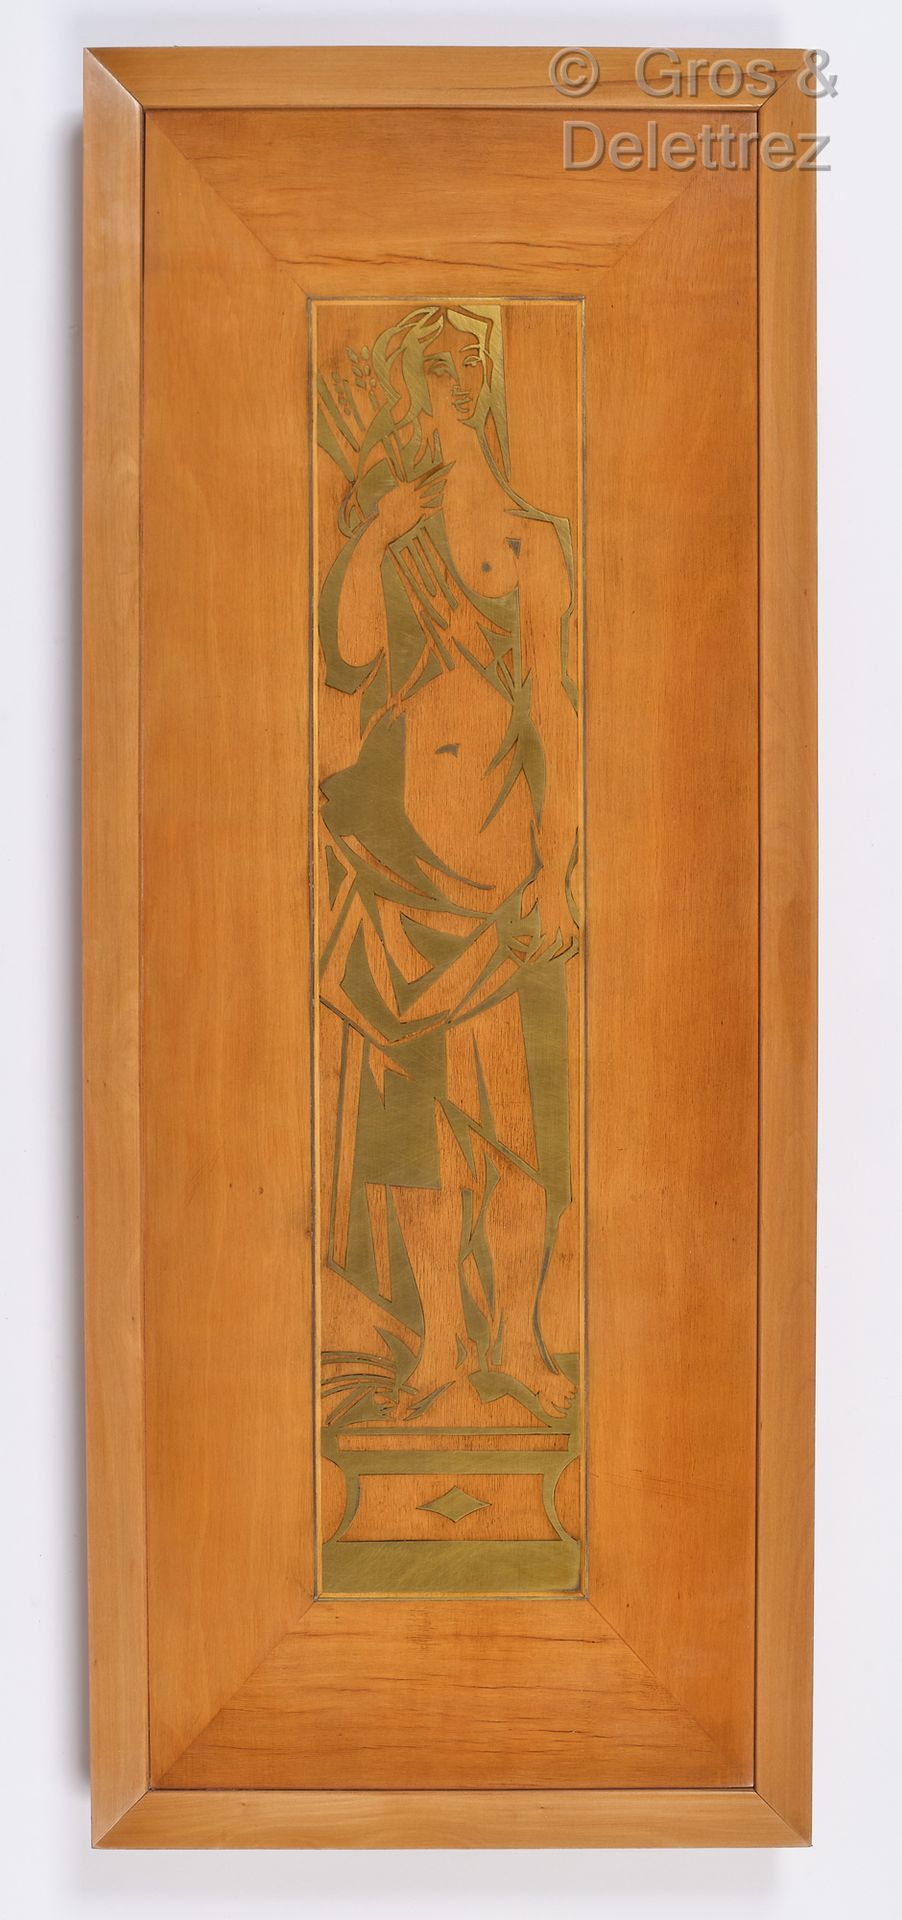 Null Lavori degli anni '40

Pannello intarsiato in legno e ottone con Diana cacc&hellip;